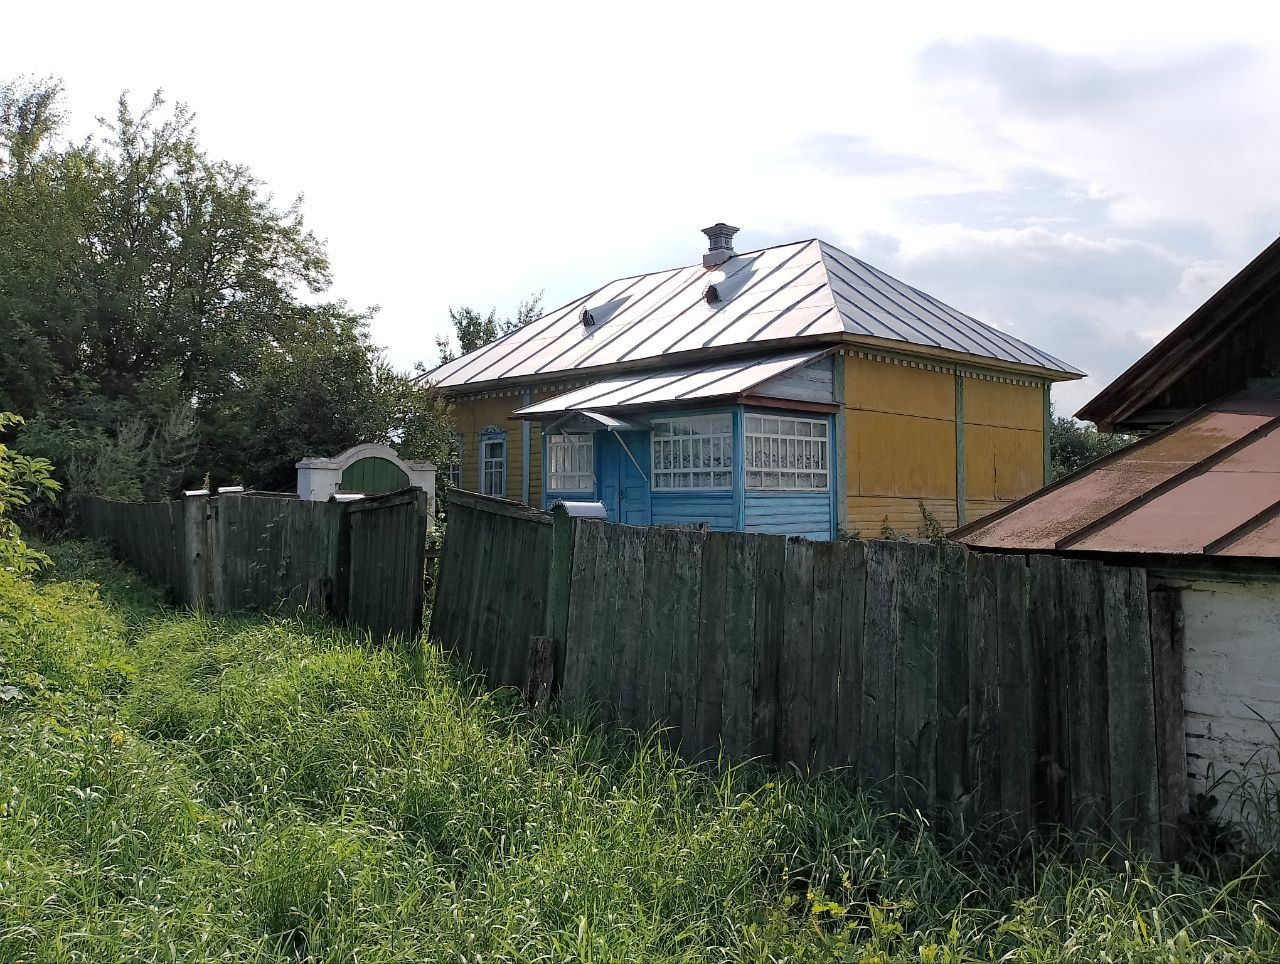 Продається будинок в селі Комарівка